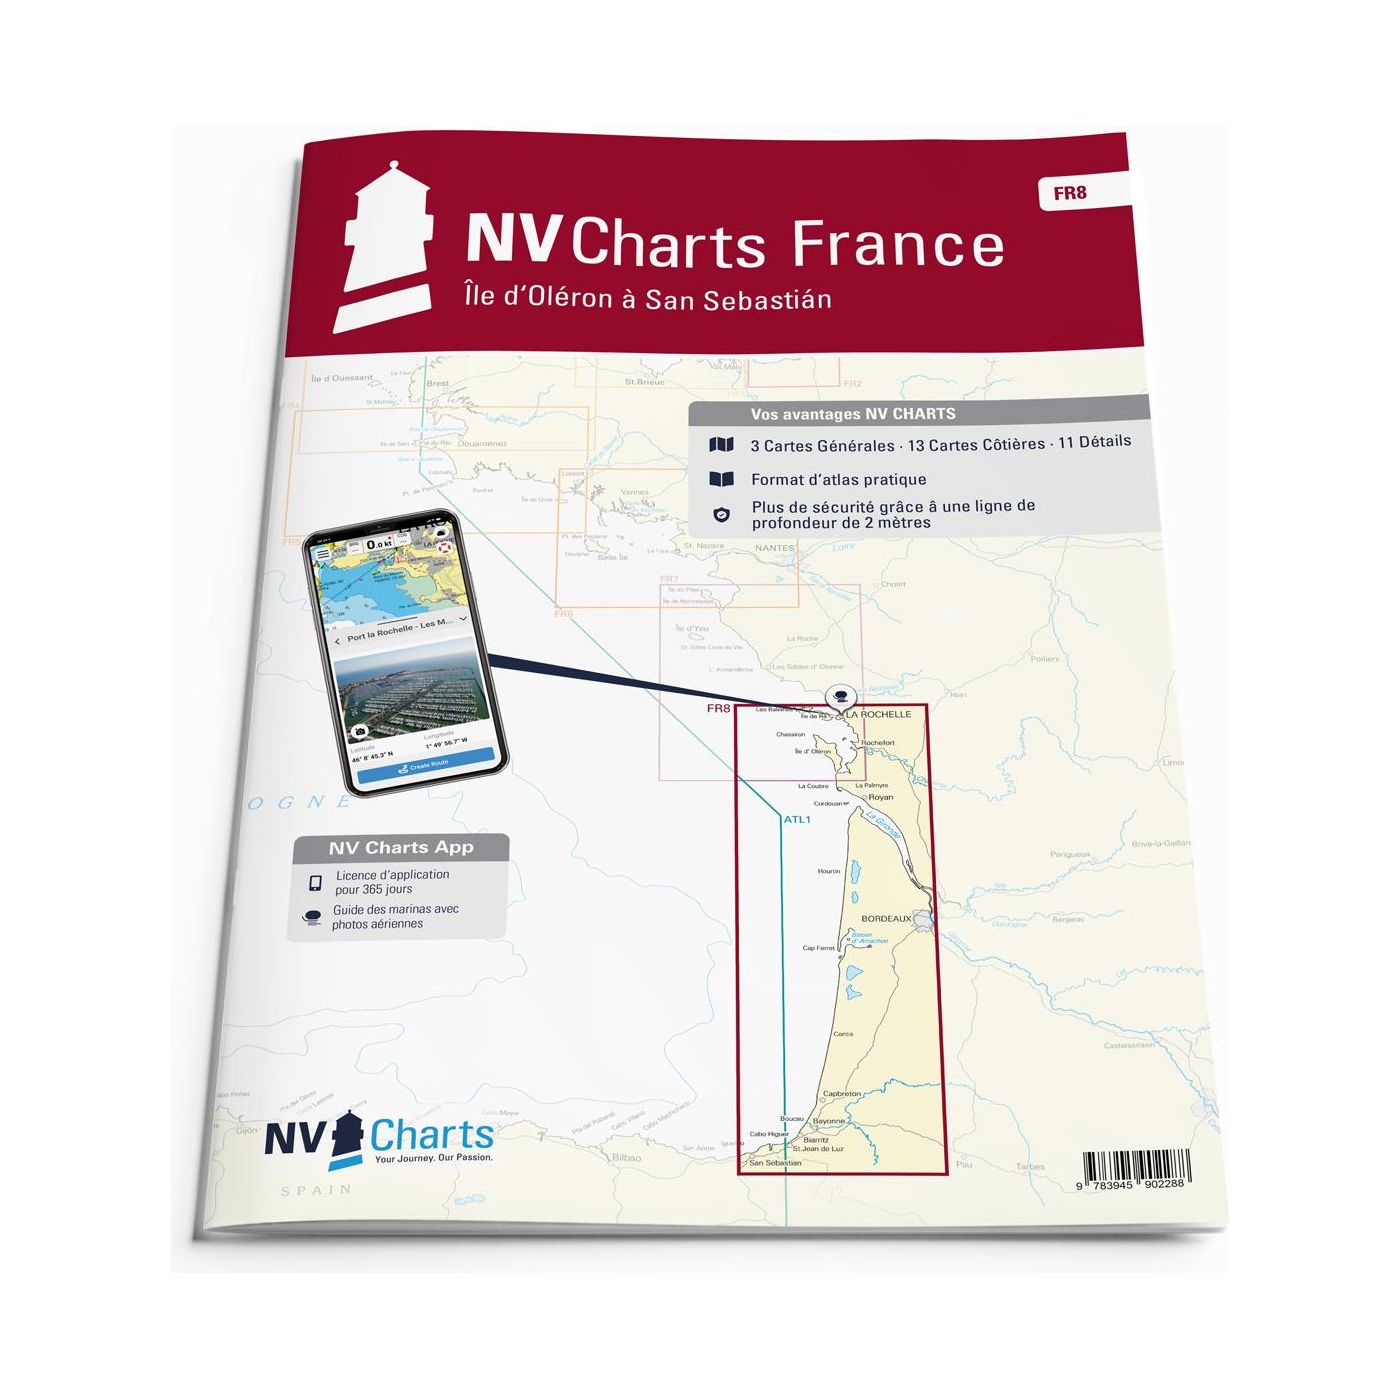 NV Atlas France - FR8 - Île d'Oléron à San Sebastian - Bordeaux